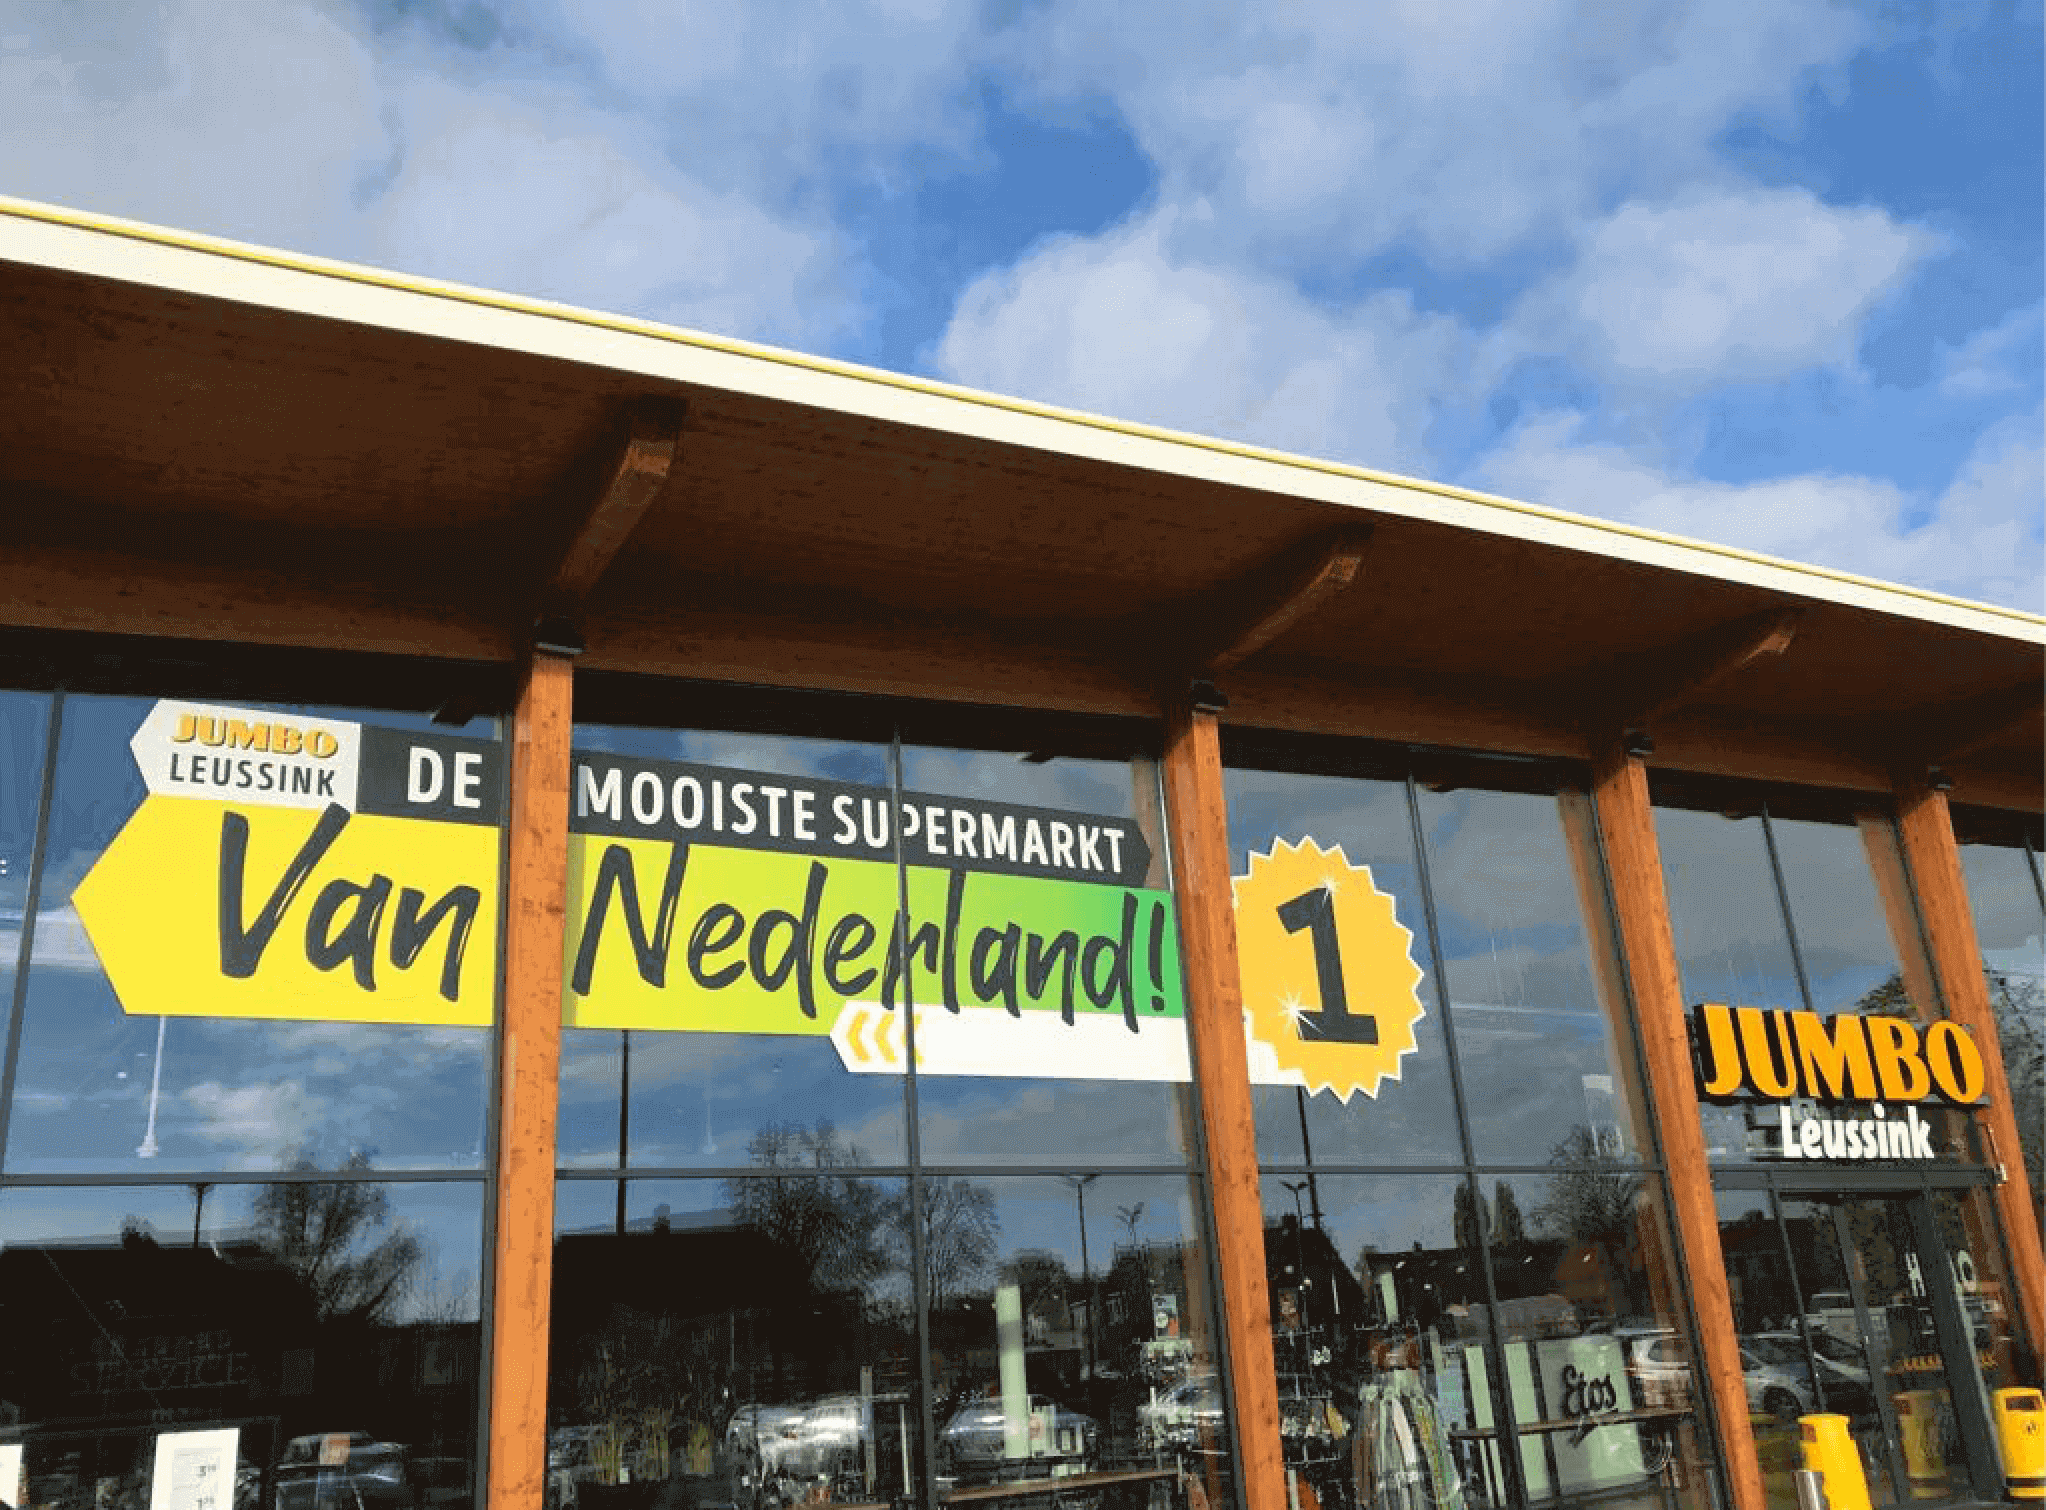 Jumbo Leussink in Goor de mooiste supermarkt van Nederland